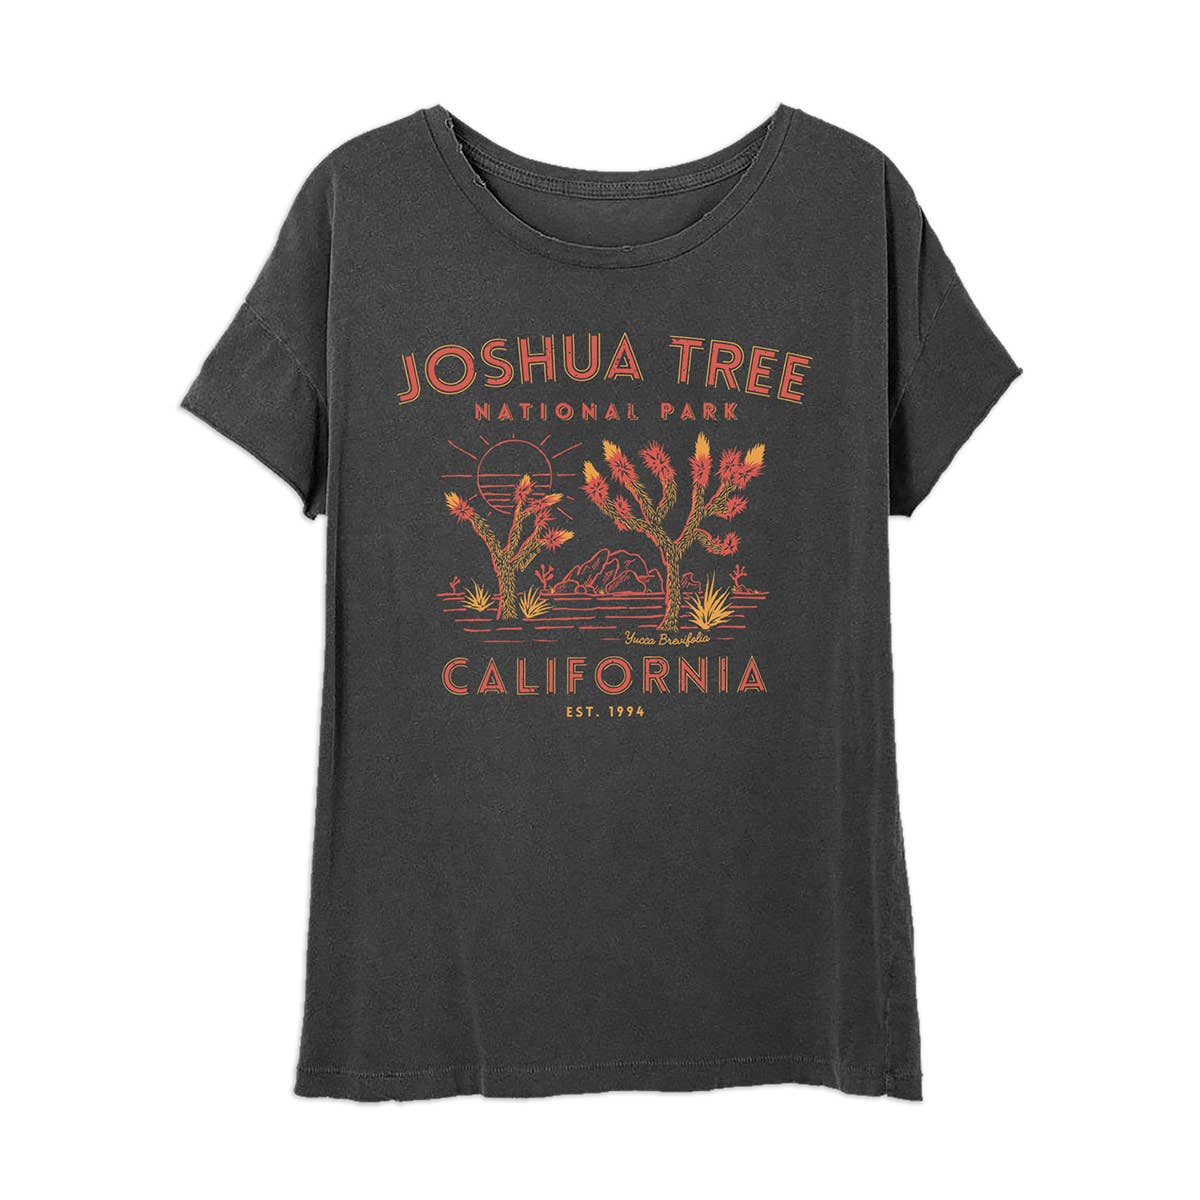 Joshua Tree T Shirt- USA Made / 100% Cotton